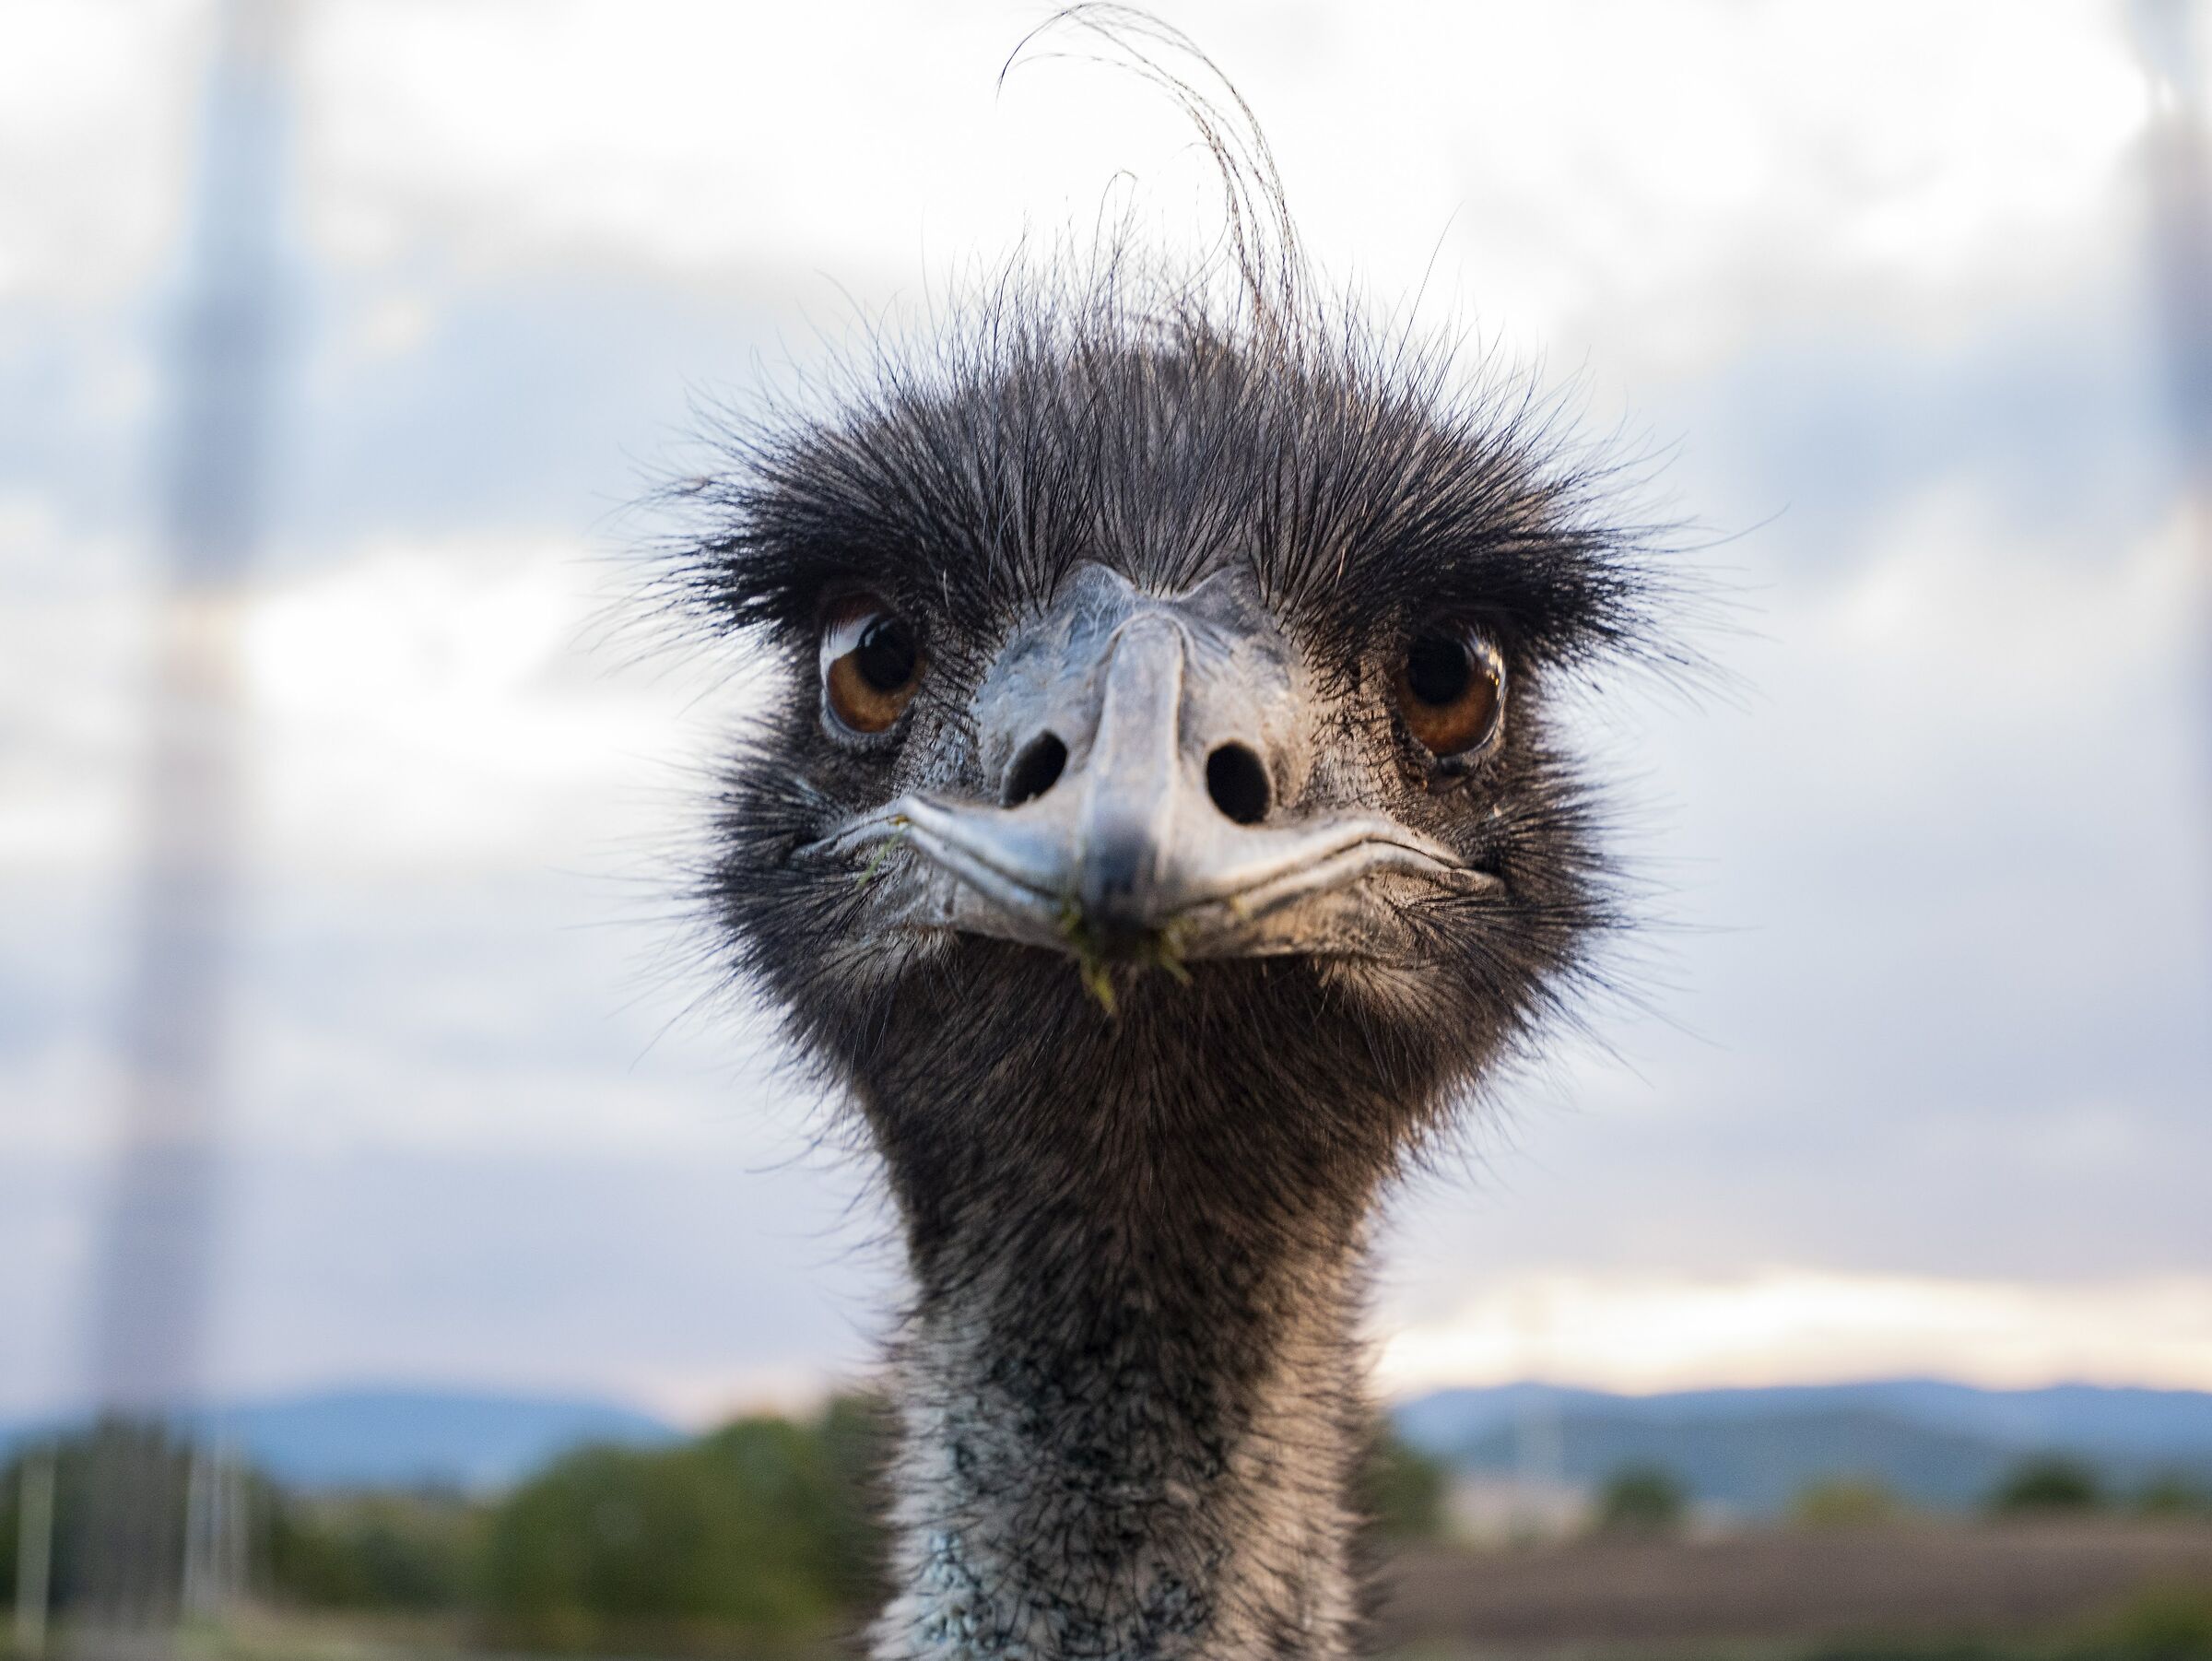 Ostrich face...